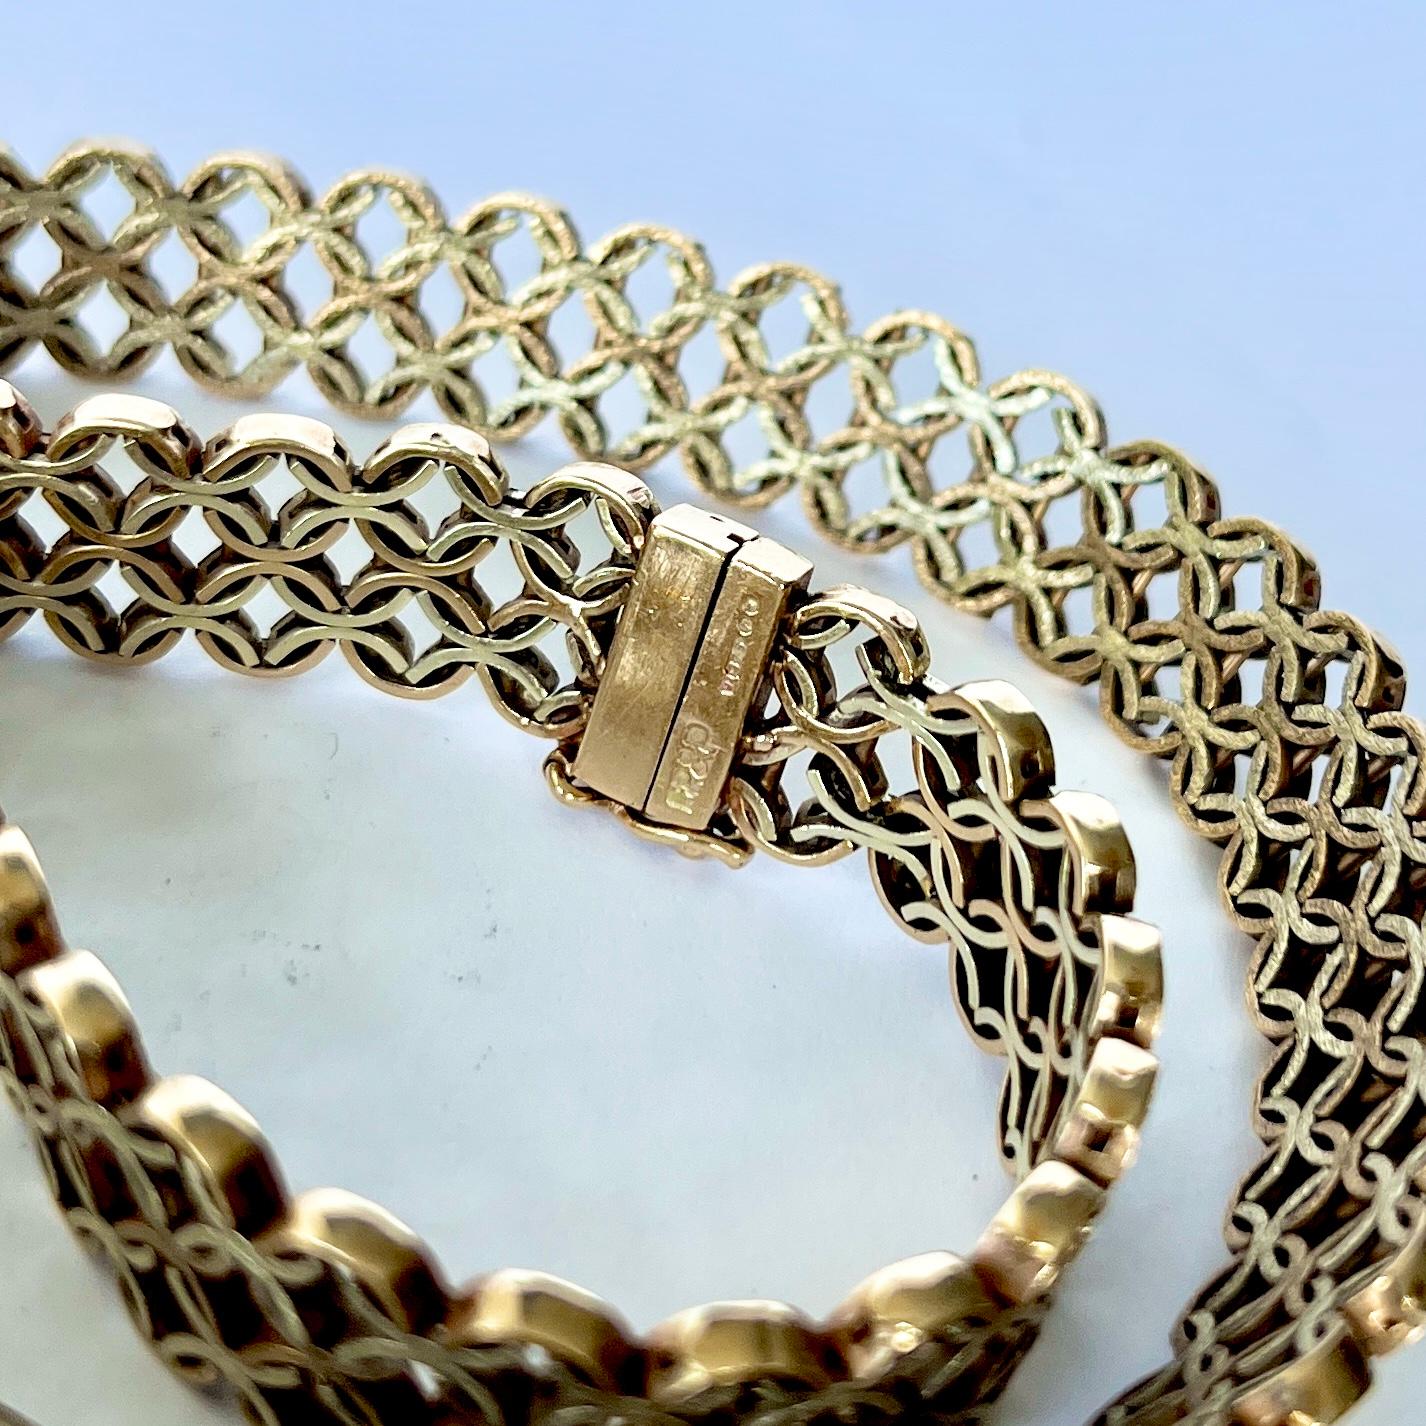 Dieses schöne Vintage-Halsband aus 9-karätigem Gold ist flach und sitzt schön. Sie wird mit einer einfachen Schließe verschlossen. Vollständig gestempelt London 1970.

Länge: 42,5 cm
Kettenbreite: 11mm 

Gewicht: 45,8 g